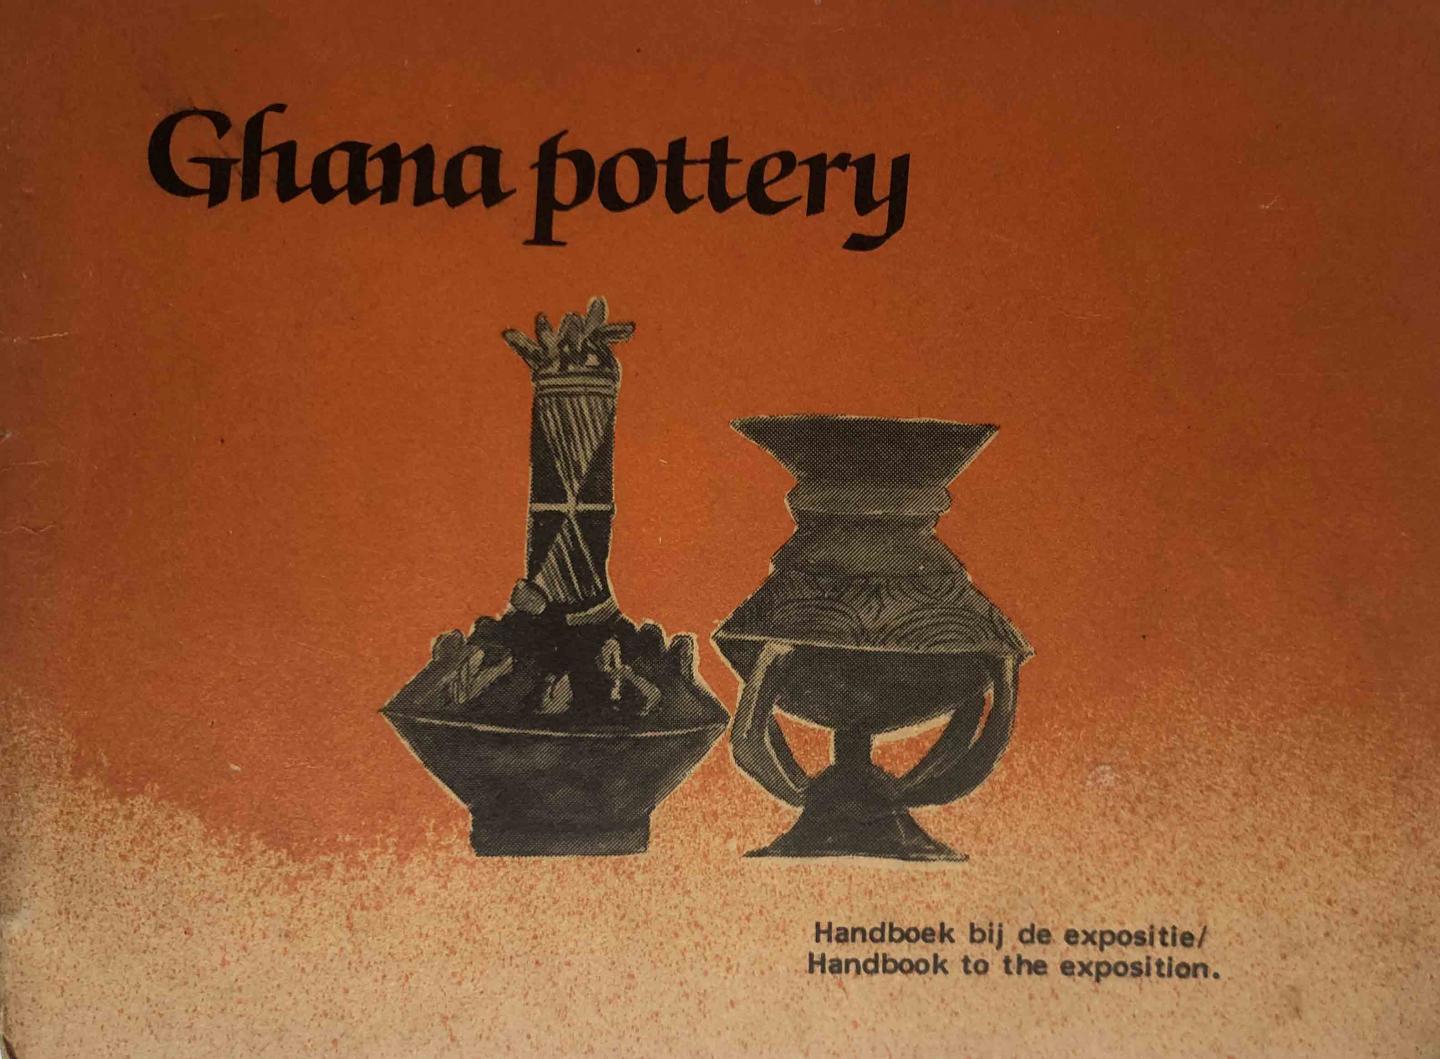 Ham, Laurent van - Ghana pottery